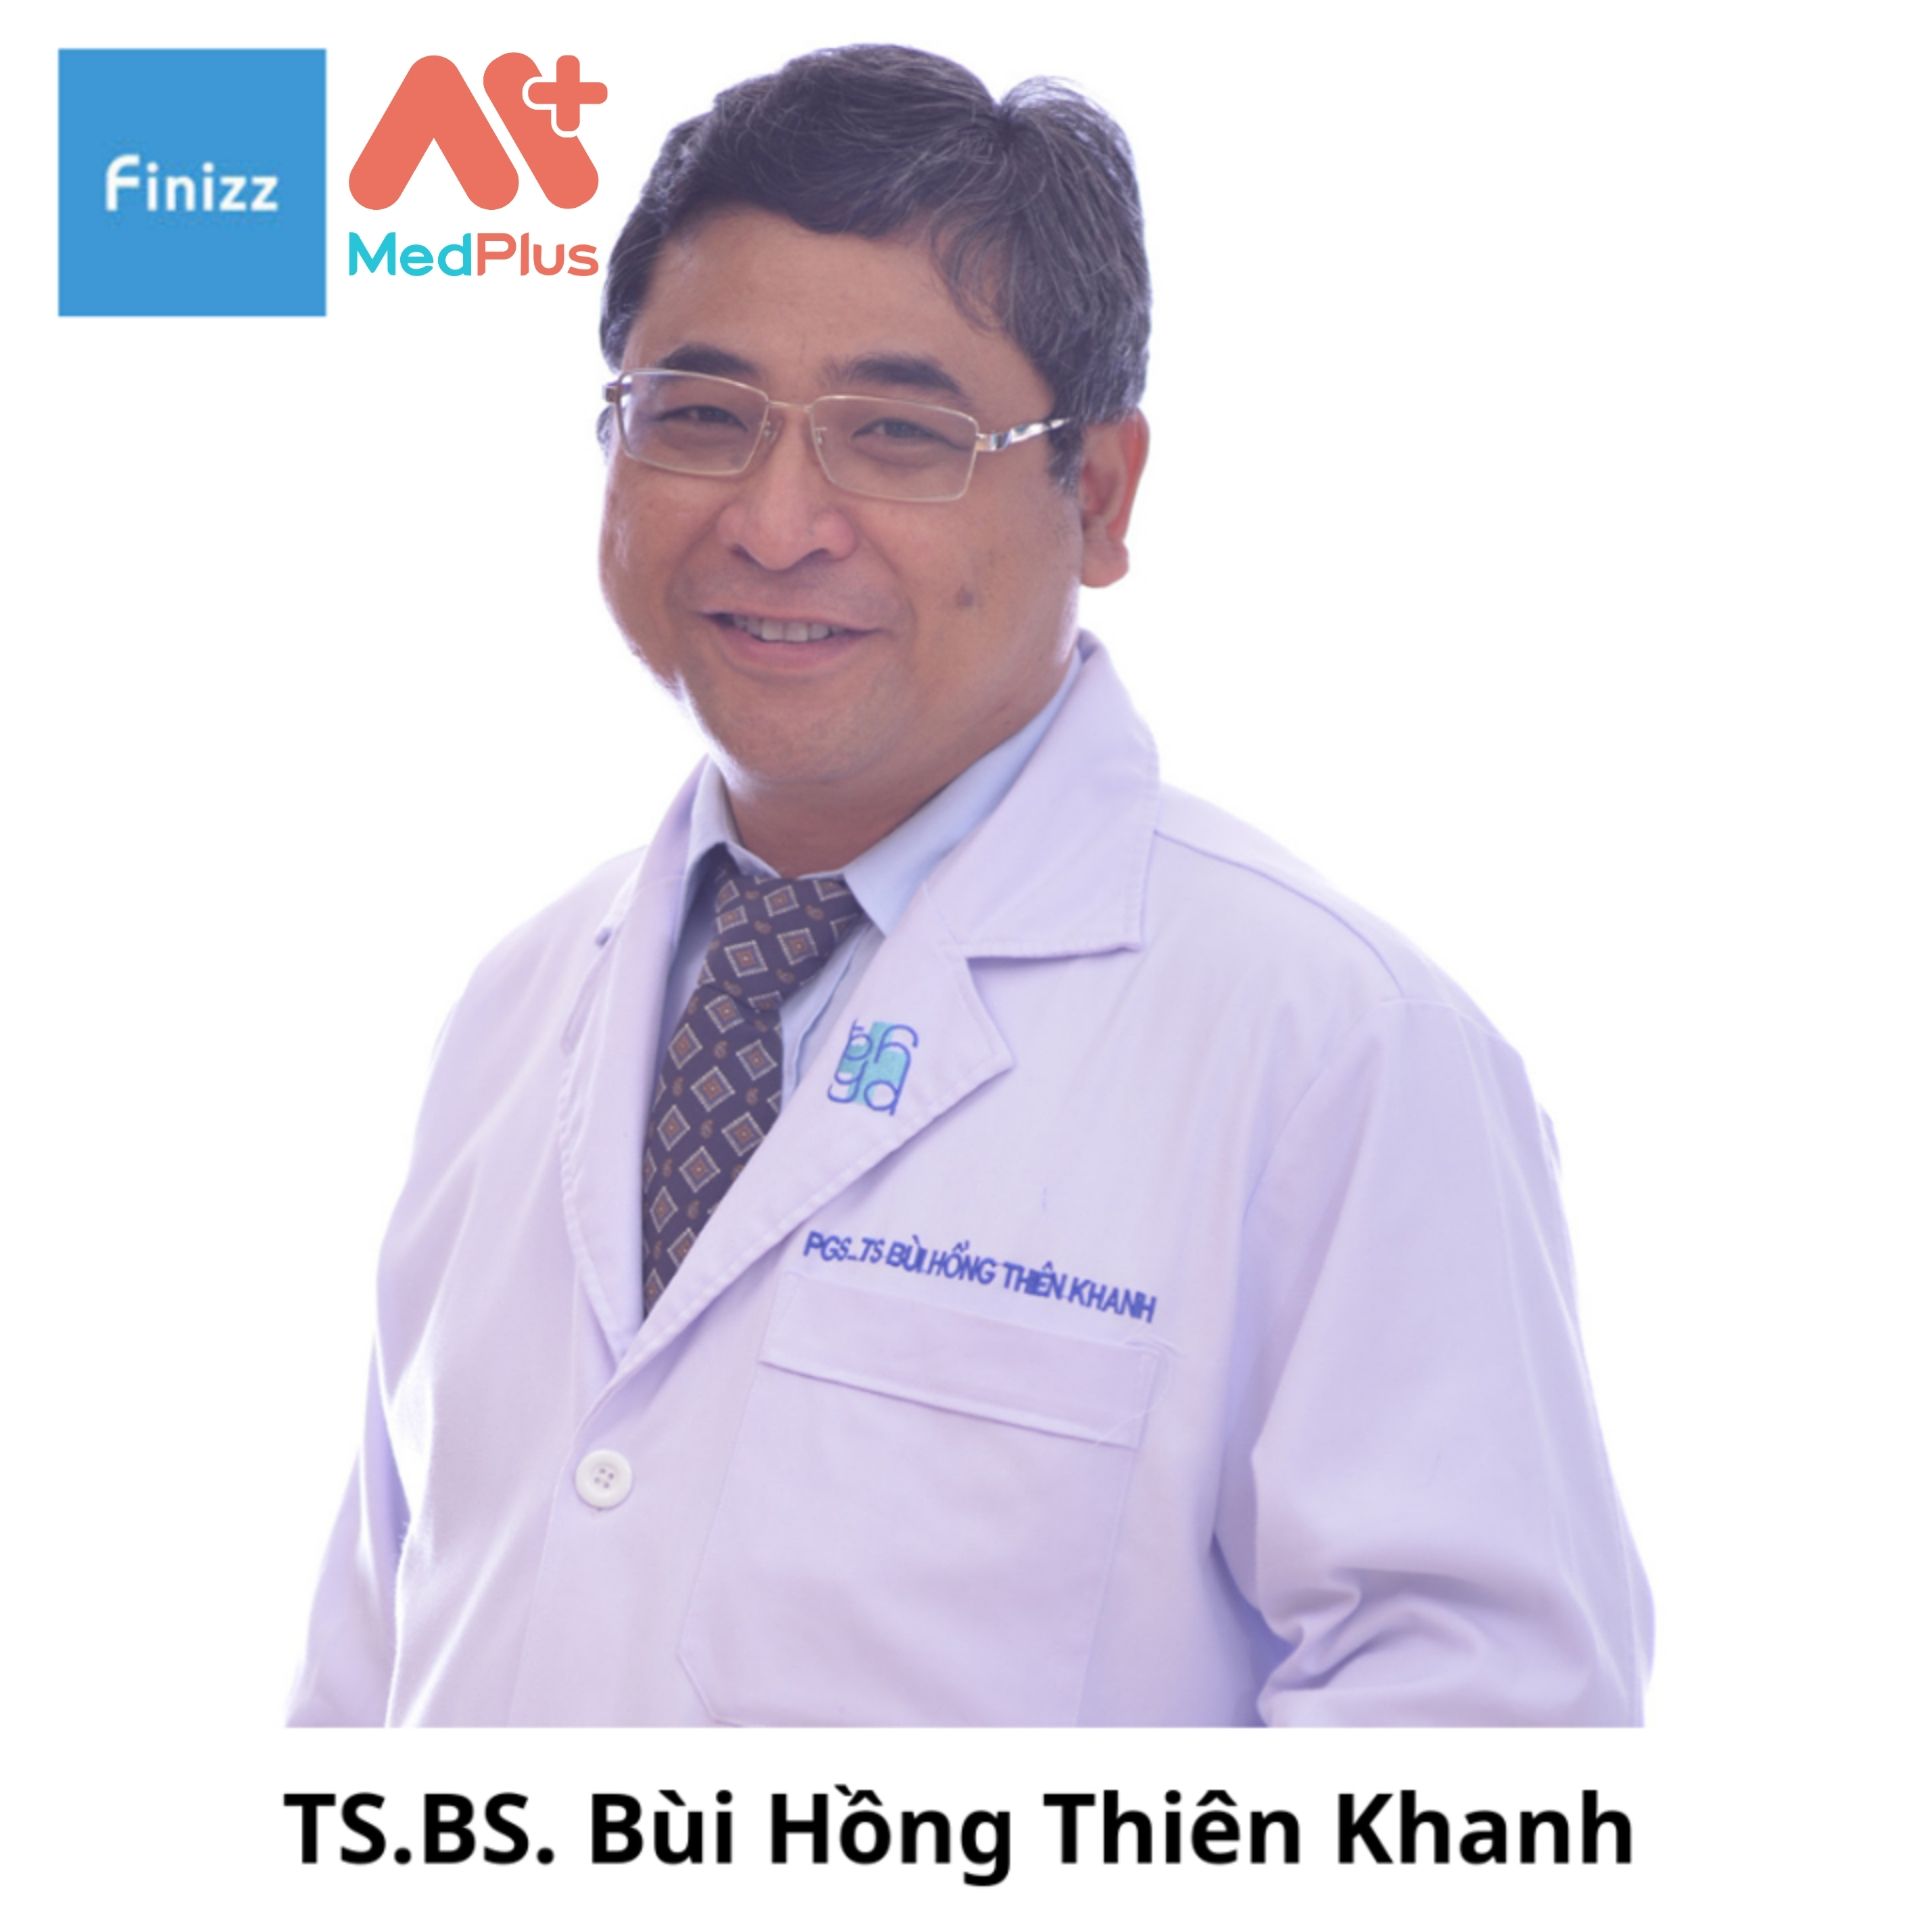 Tiến sĩ - Bác sĩ Bùi Hồng Thiên Khanh